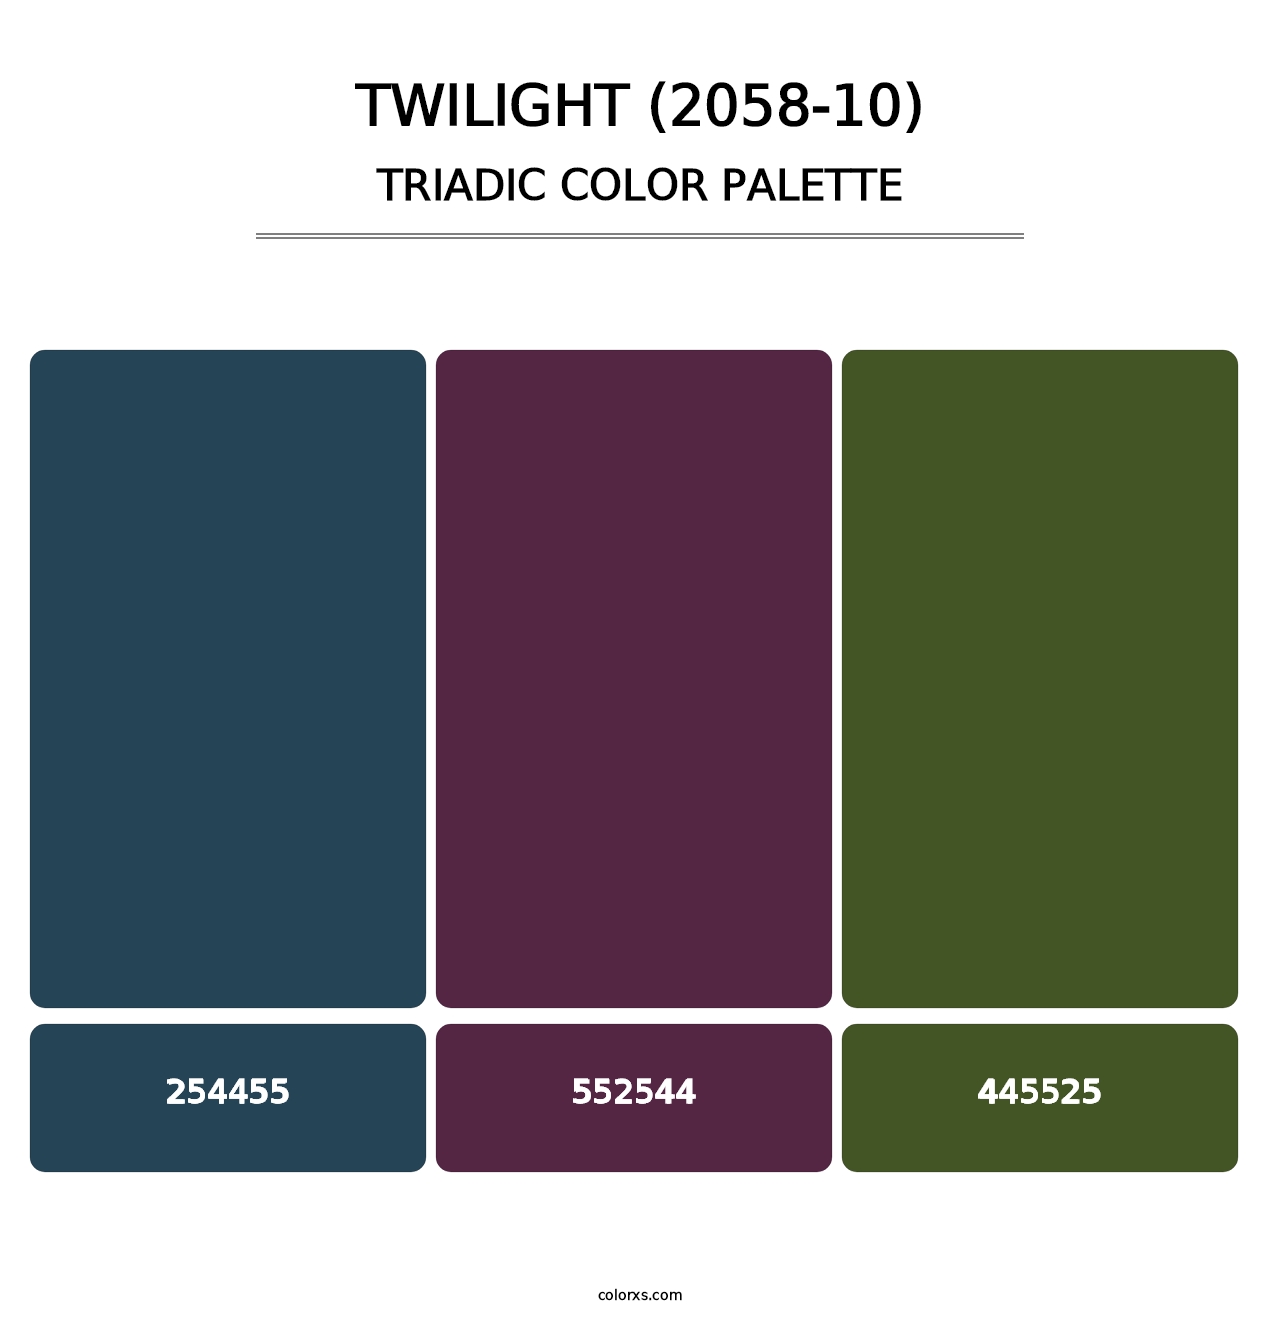 Twilight (2058-10) - Triadic Color Palette